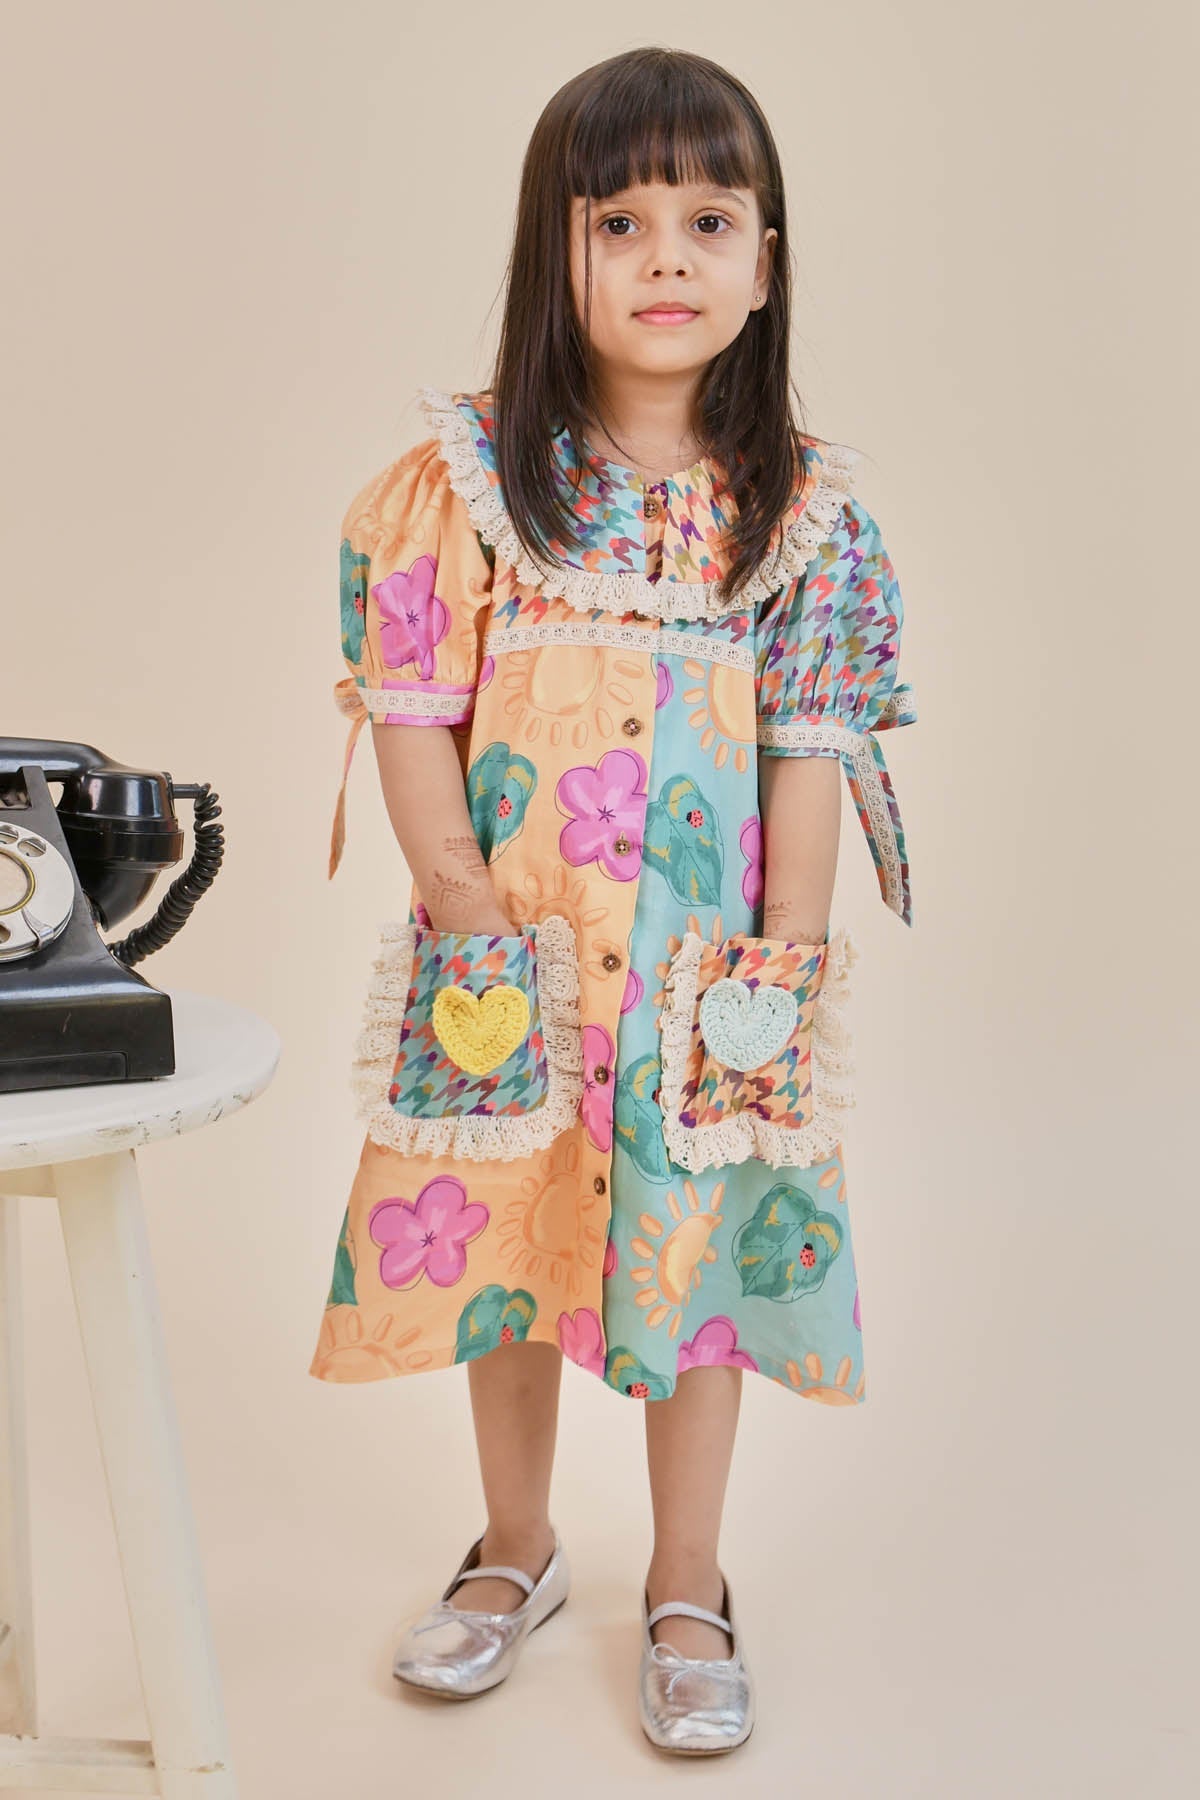 Designer Little Shiro Printed Crochet Heart Dress For Kids (Boys & Girls) Available online at ScrollnShops